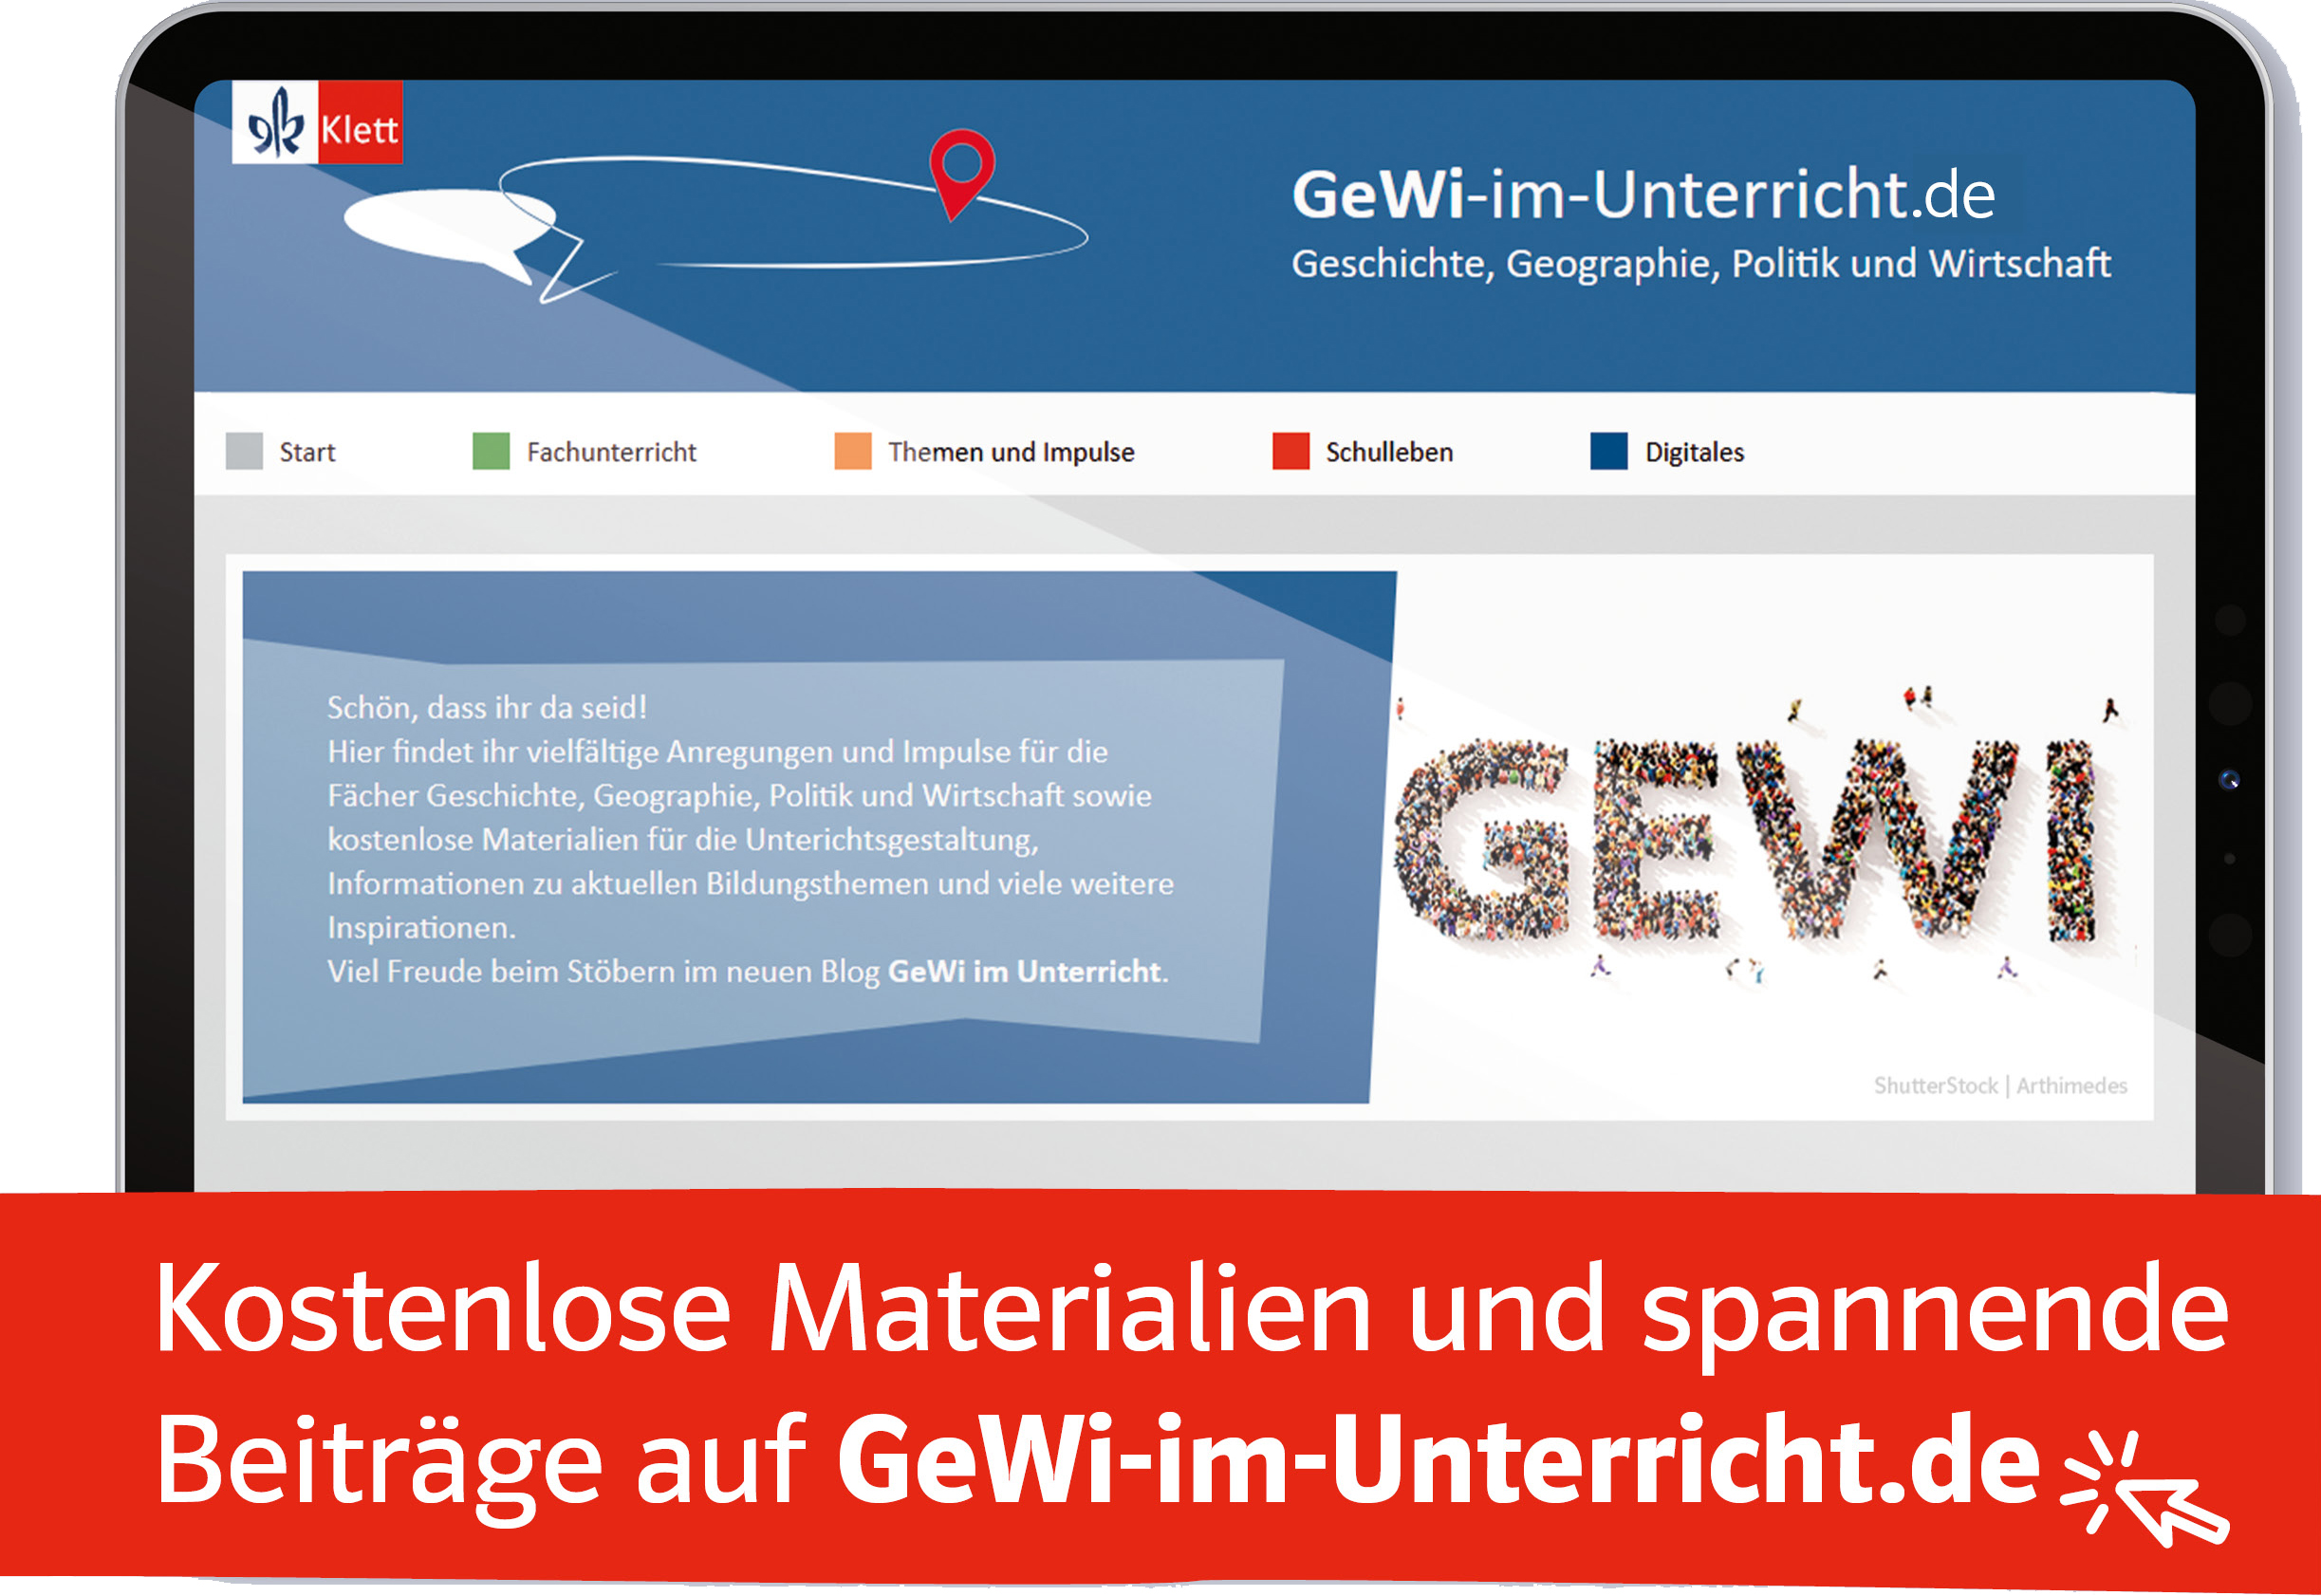 GeWi-im-Unterricht.de